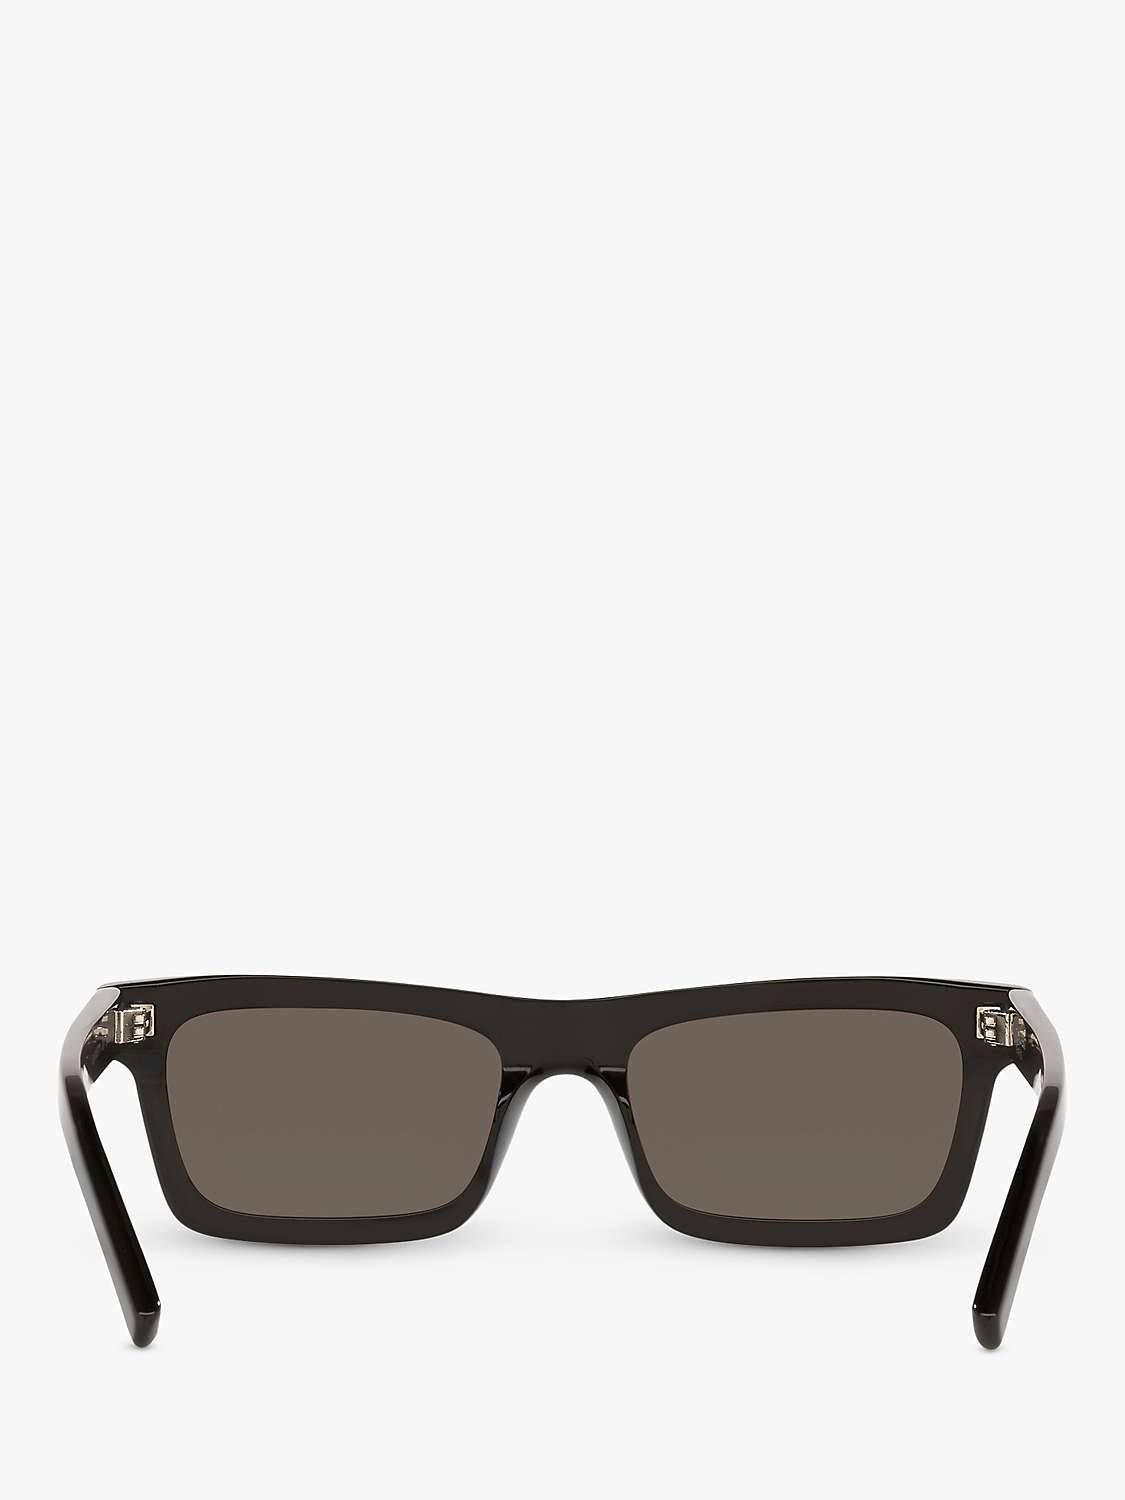 Buy Yves Saint Laurent YS000289 Women's Rectangular Sunglasses, Black Online at johnlewis.com